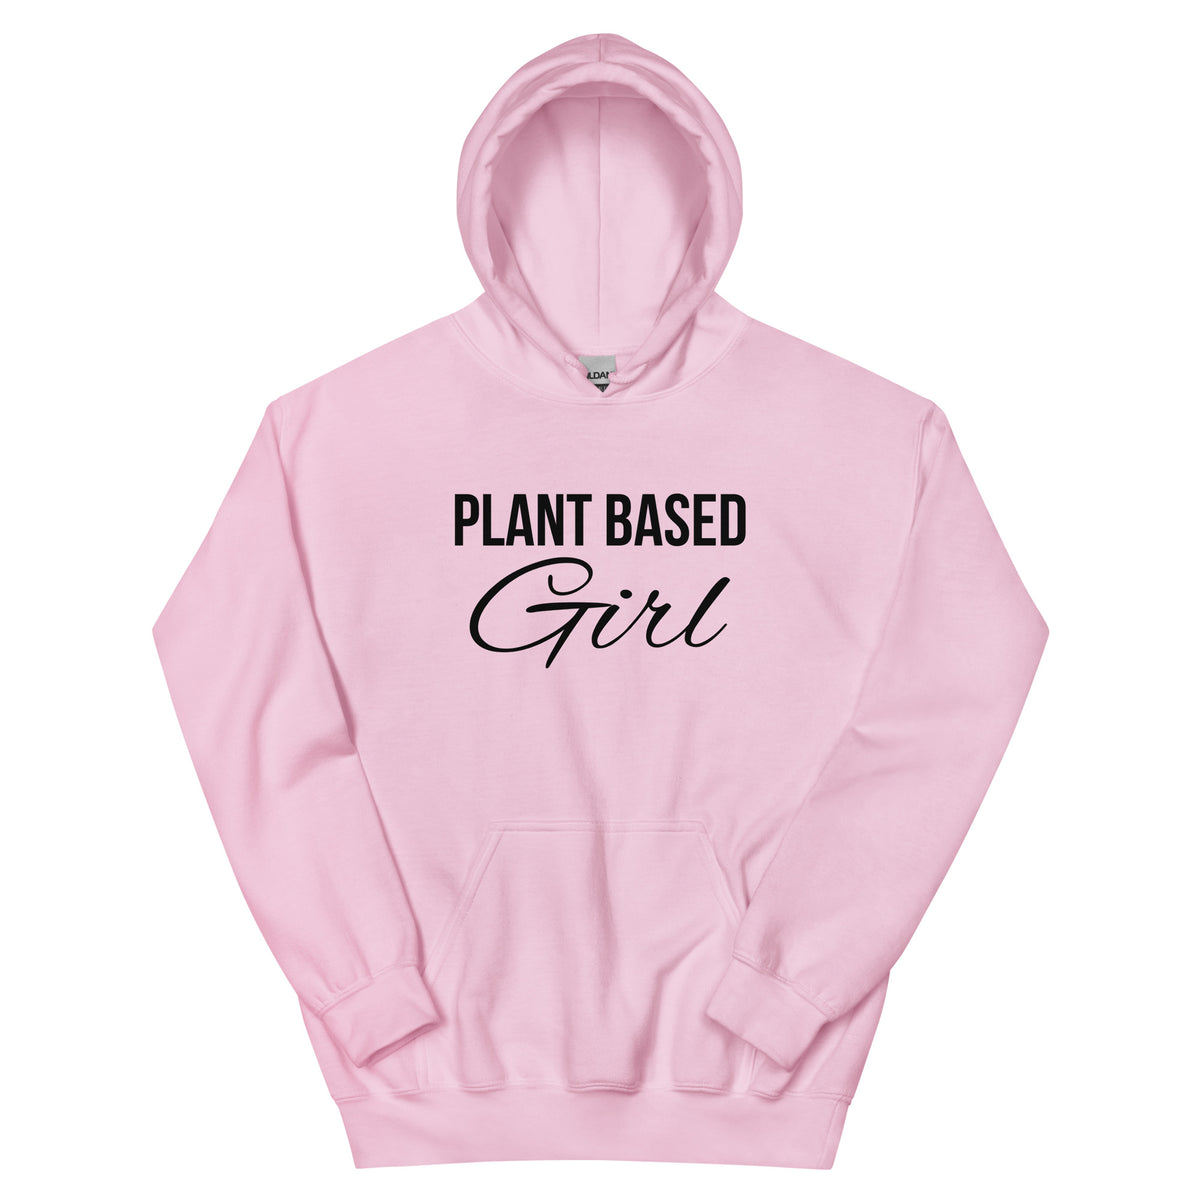 PLANT BASED GIRL Hoodie